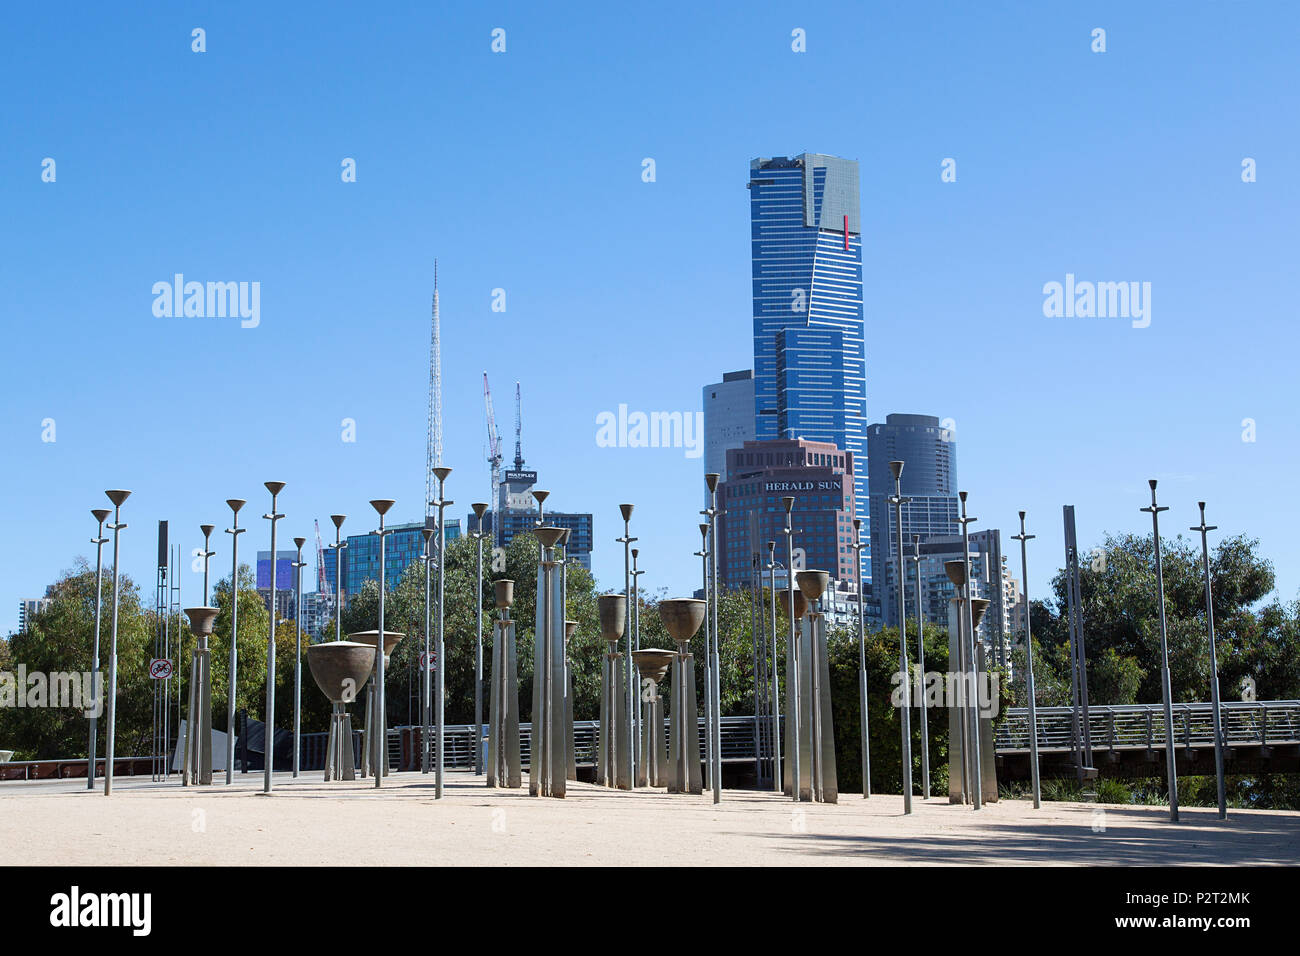 Melbourne, Australien: April 09, 2018: Föderation Glocken ist eine Installation aus 39 umgedrehte Glocken. In Birrarung Marr Park, Melbourne. Stockfoto